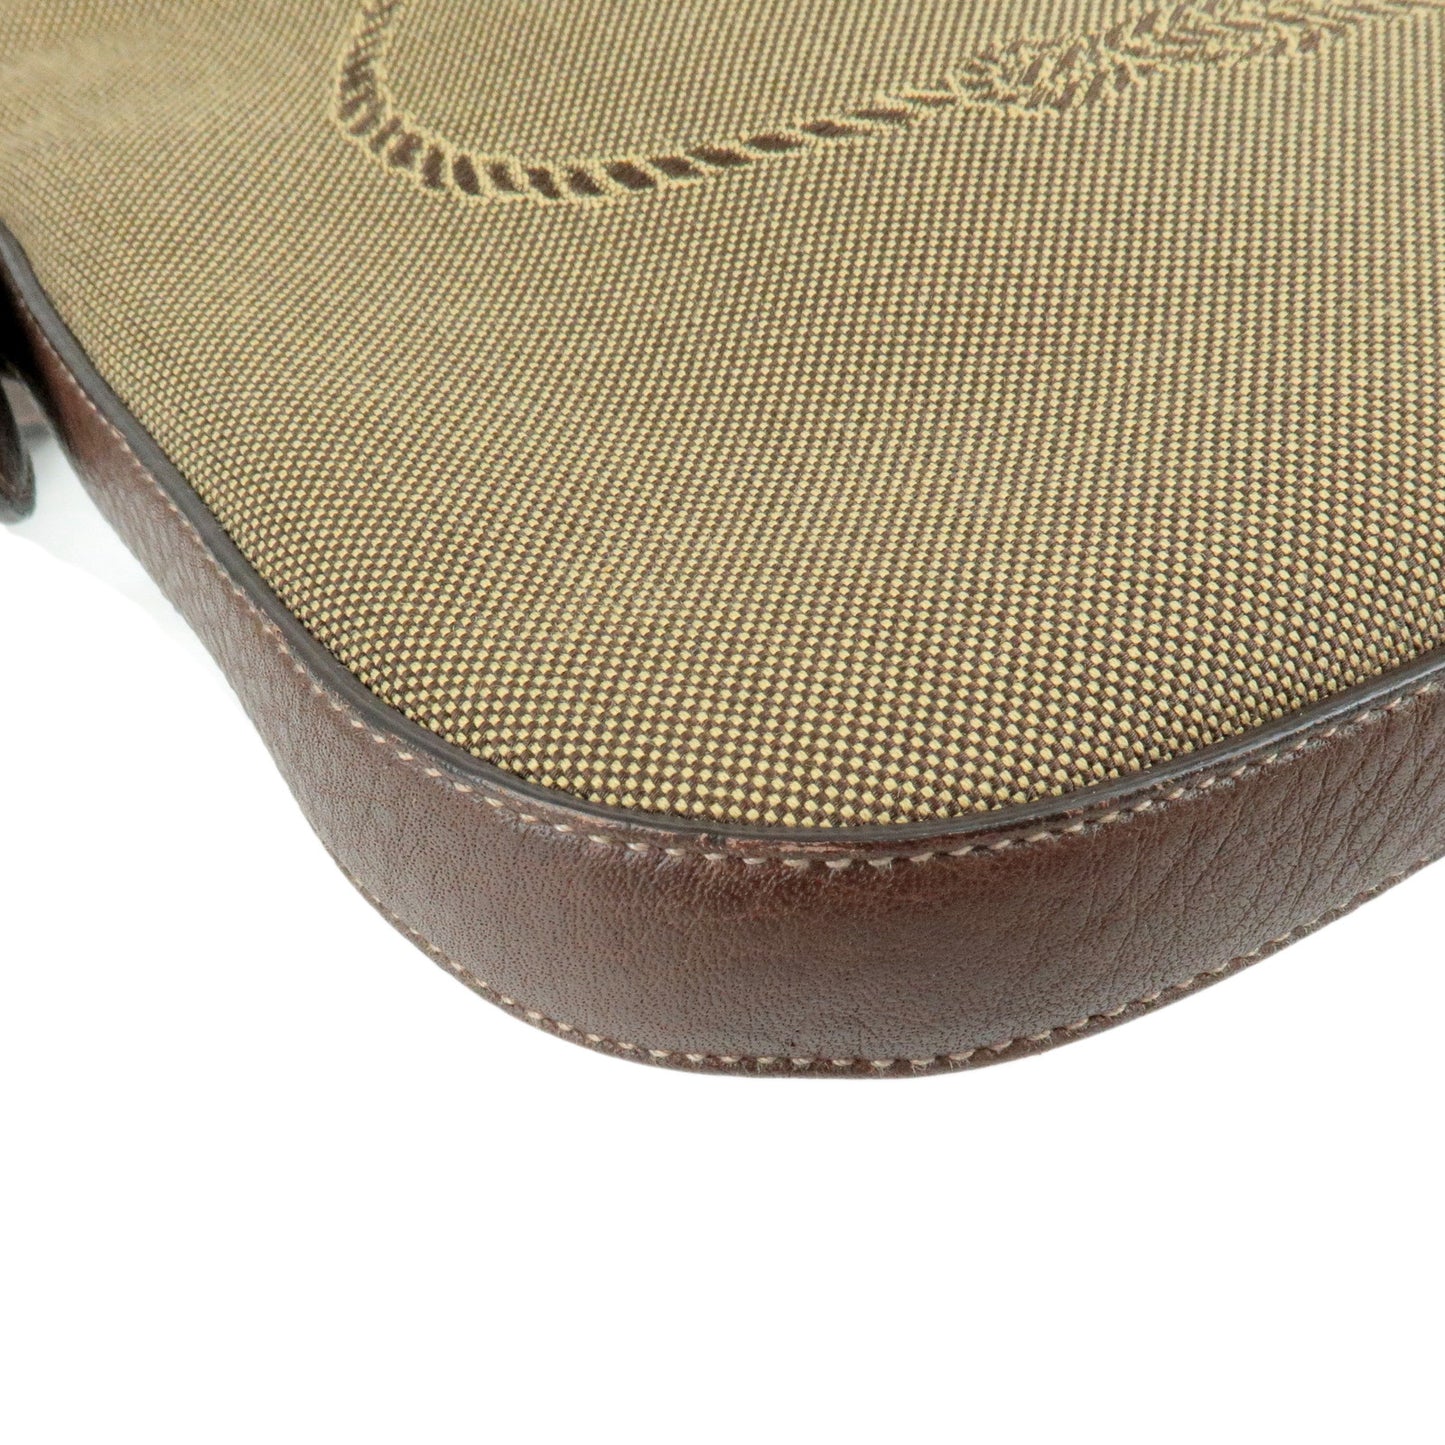 PRADA Nylon Jaquard Leather Shoulder Bag Beige Brown BT0706